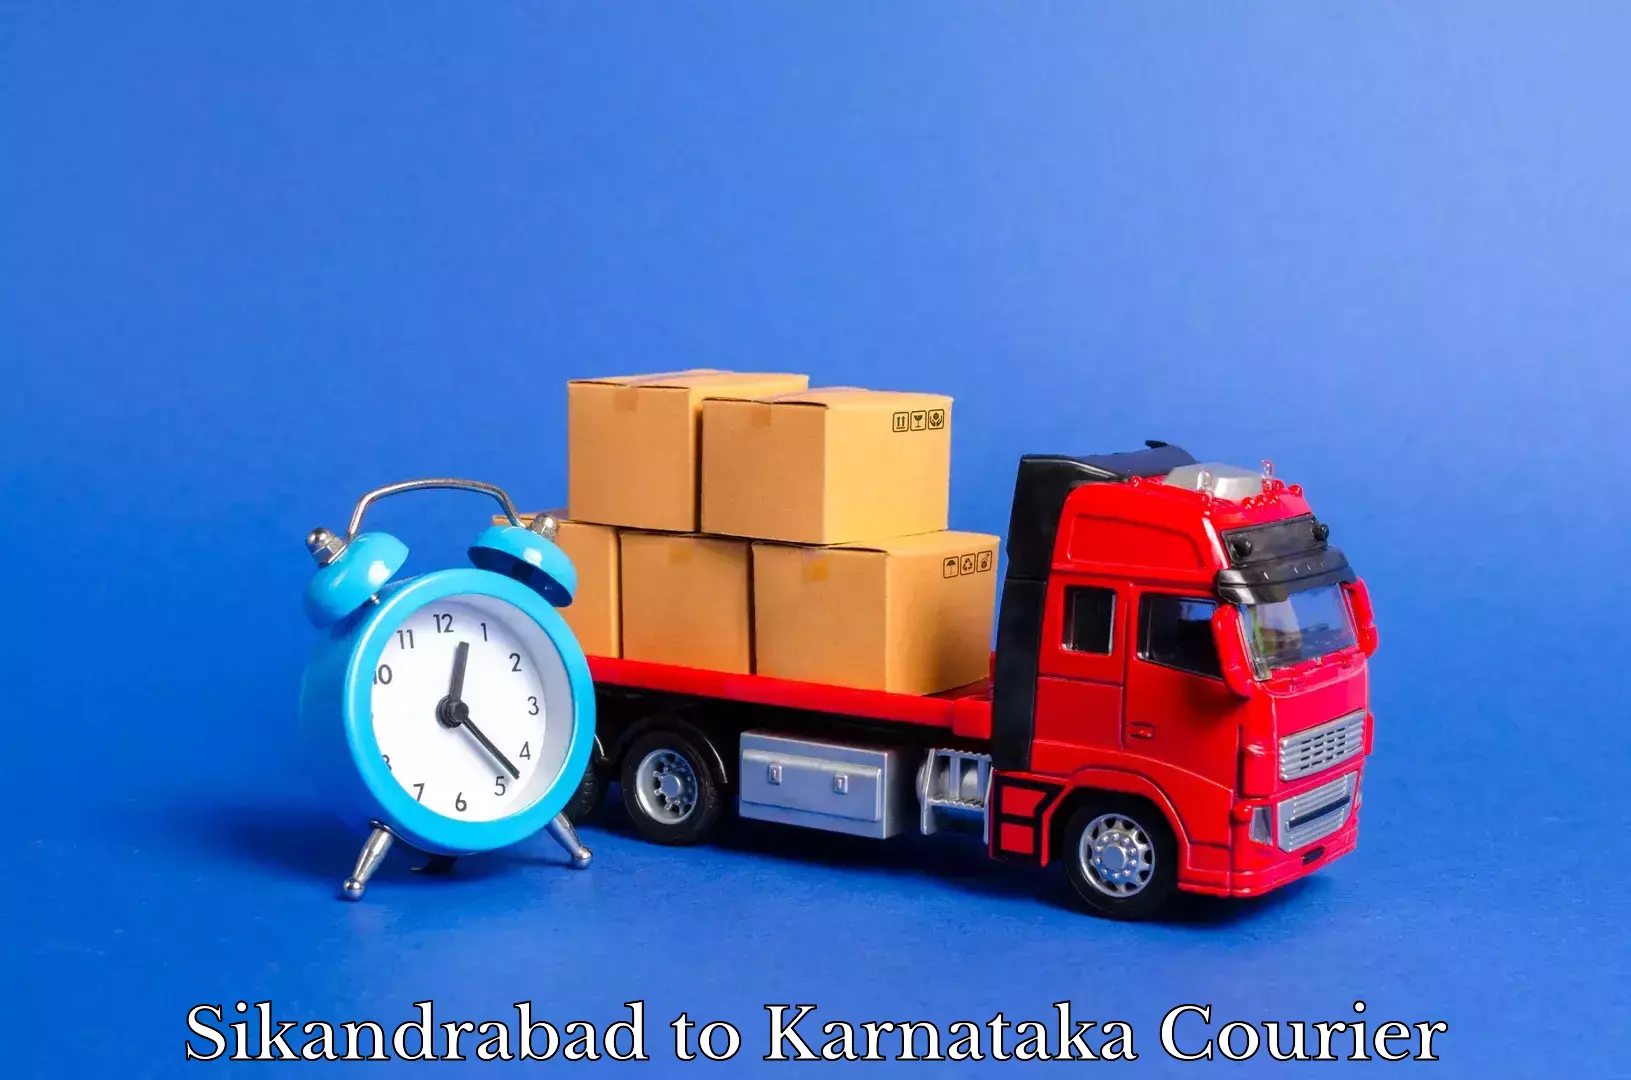 Household moving service Sikandrabad to Bethamangala